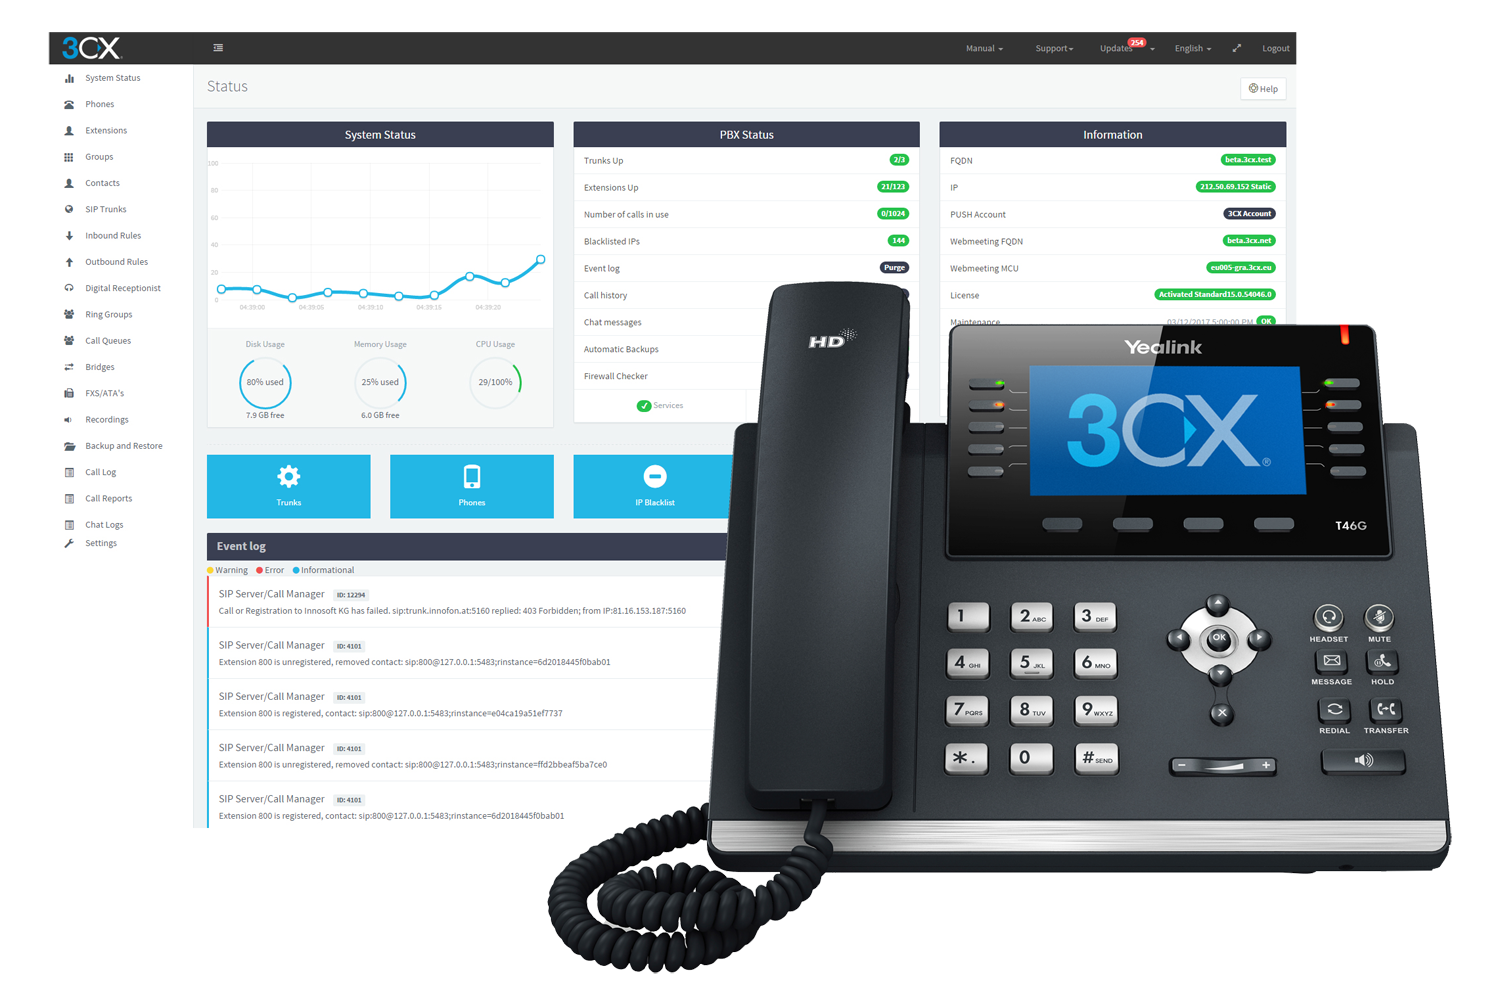 3CX Phone System ควบคุมระบบ PBX ของคุณ ใช้งานบน Windows, Linux หรือใน Cloud ได้